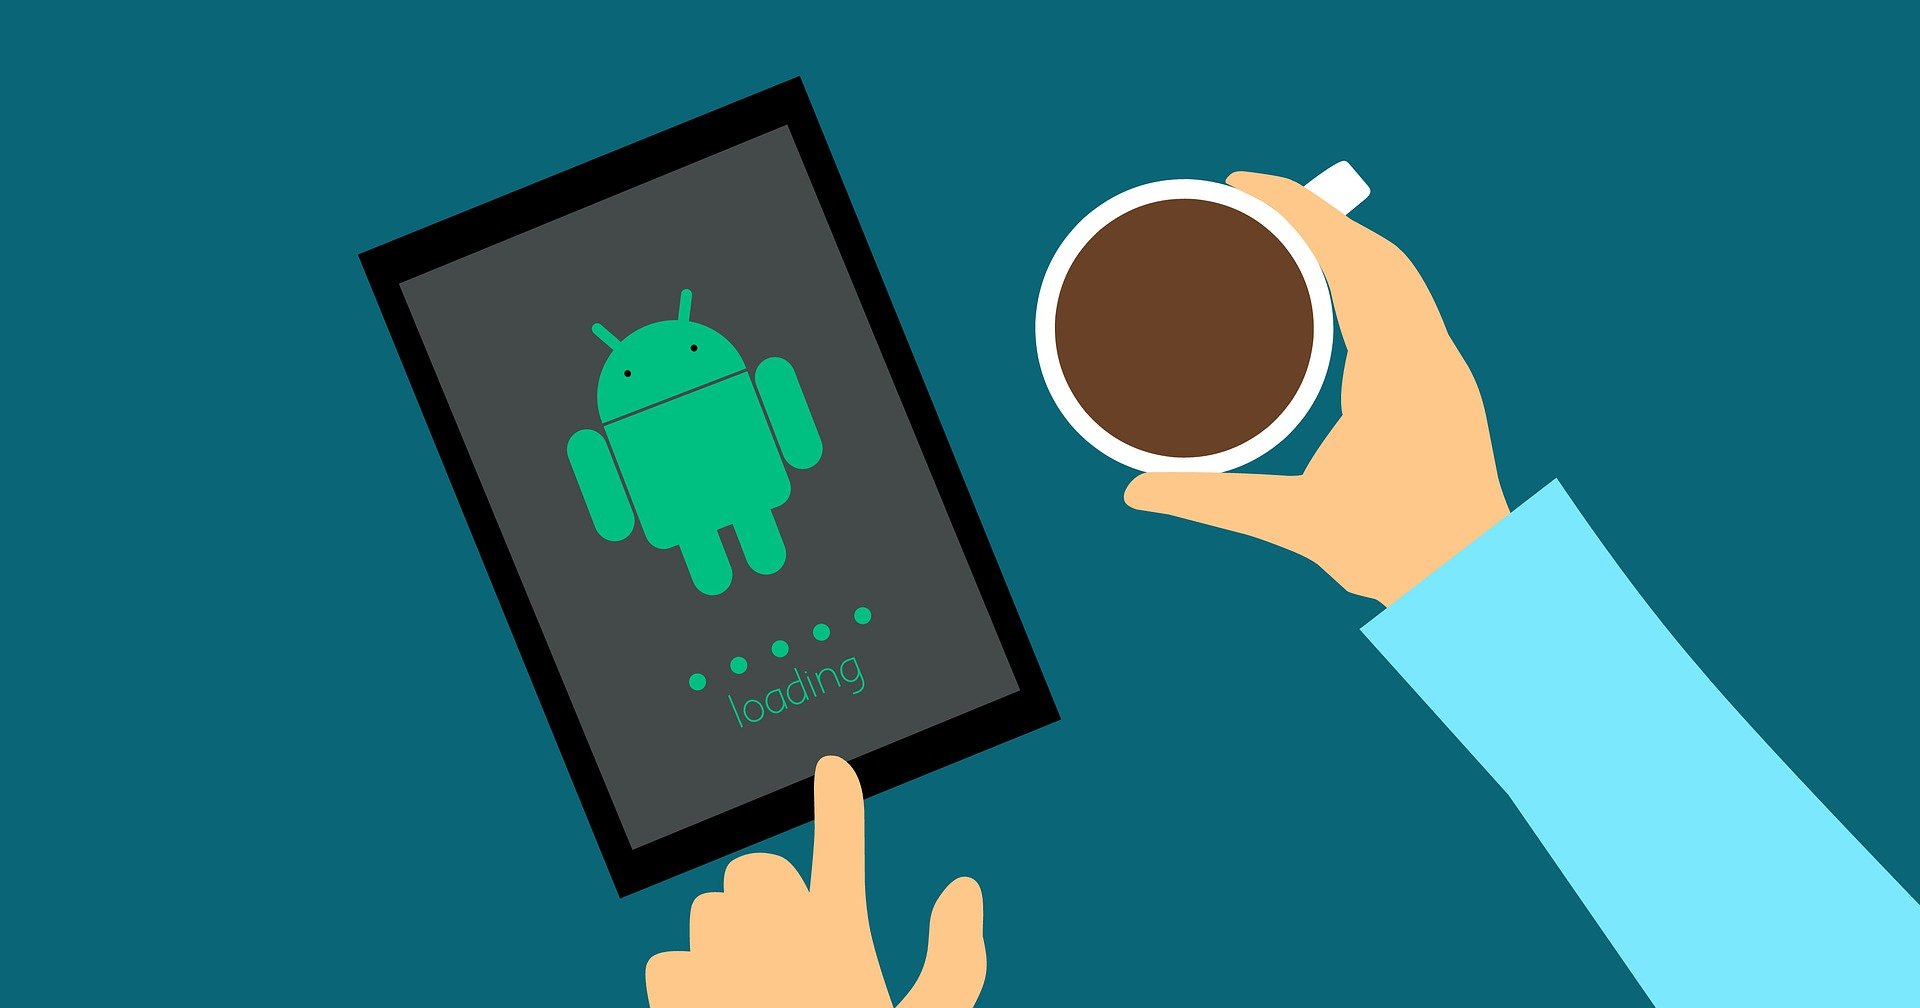 Votre prochain téléphone Android aura-t-il vraiment des publicités sur l’écran de verrouillage ?